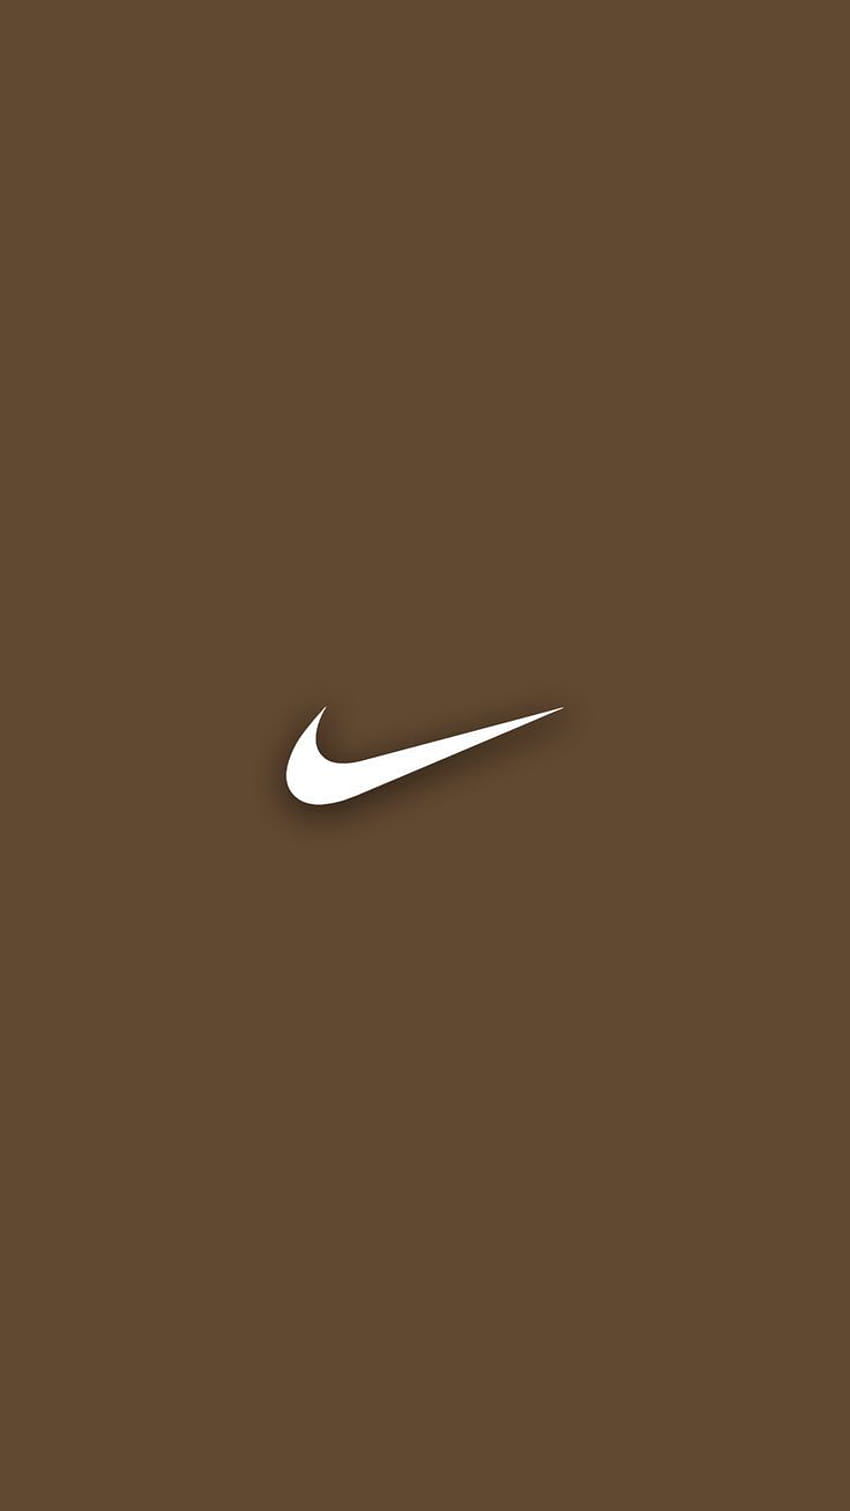 Nếu bạn yêu thích màu nâu, hãy xem bức ảnh nền Brown Nike này. Nó sẽ làm bạn phải ngỡ ngàng trước sự tuyệt đối đơn giản, nhưng không kém phần sang trọng của nó.